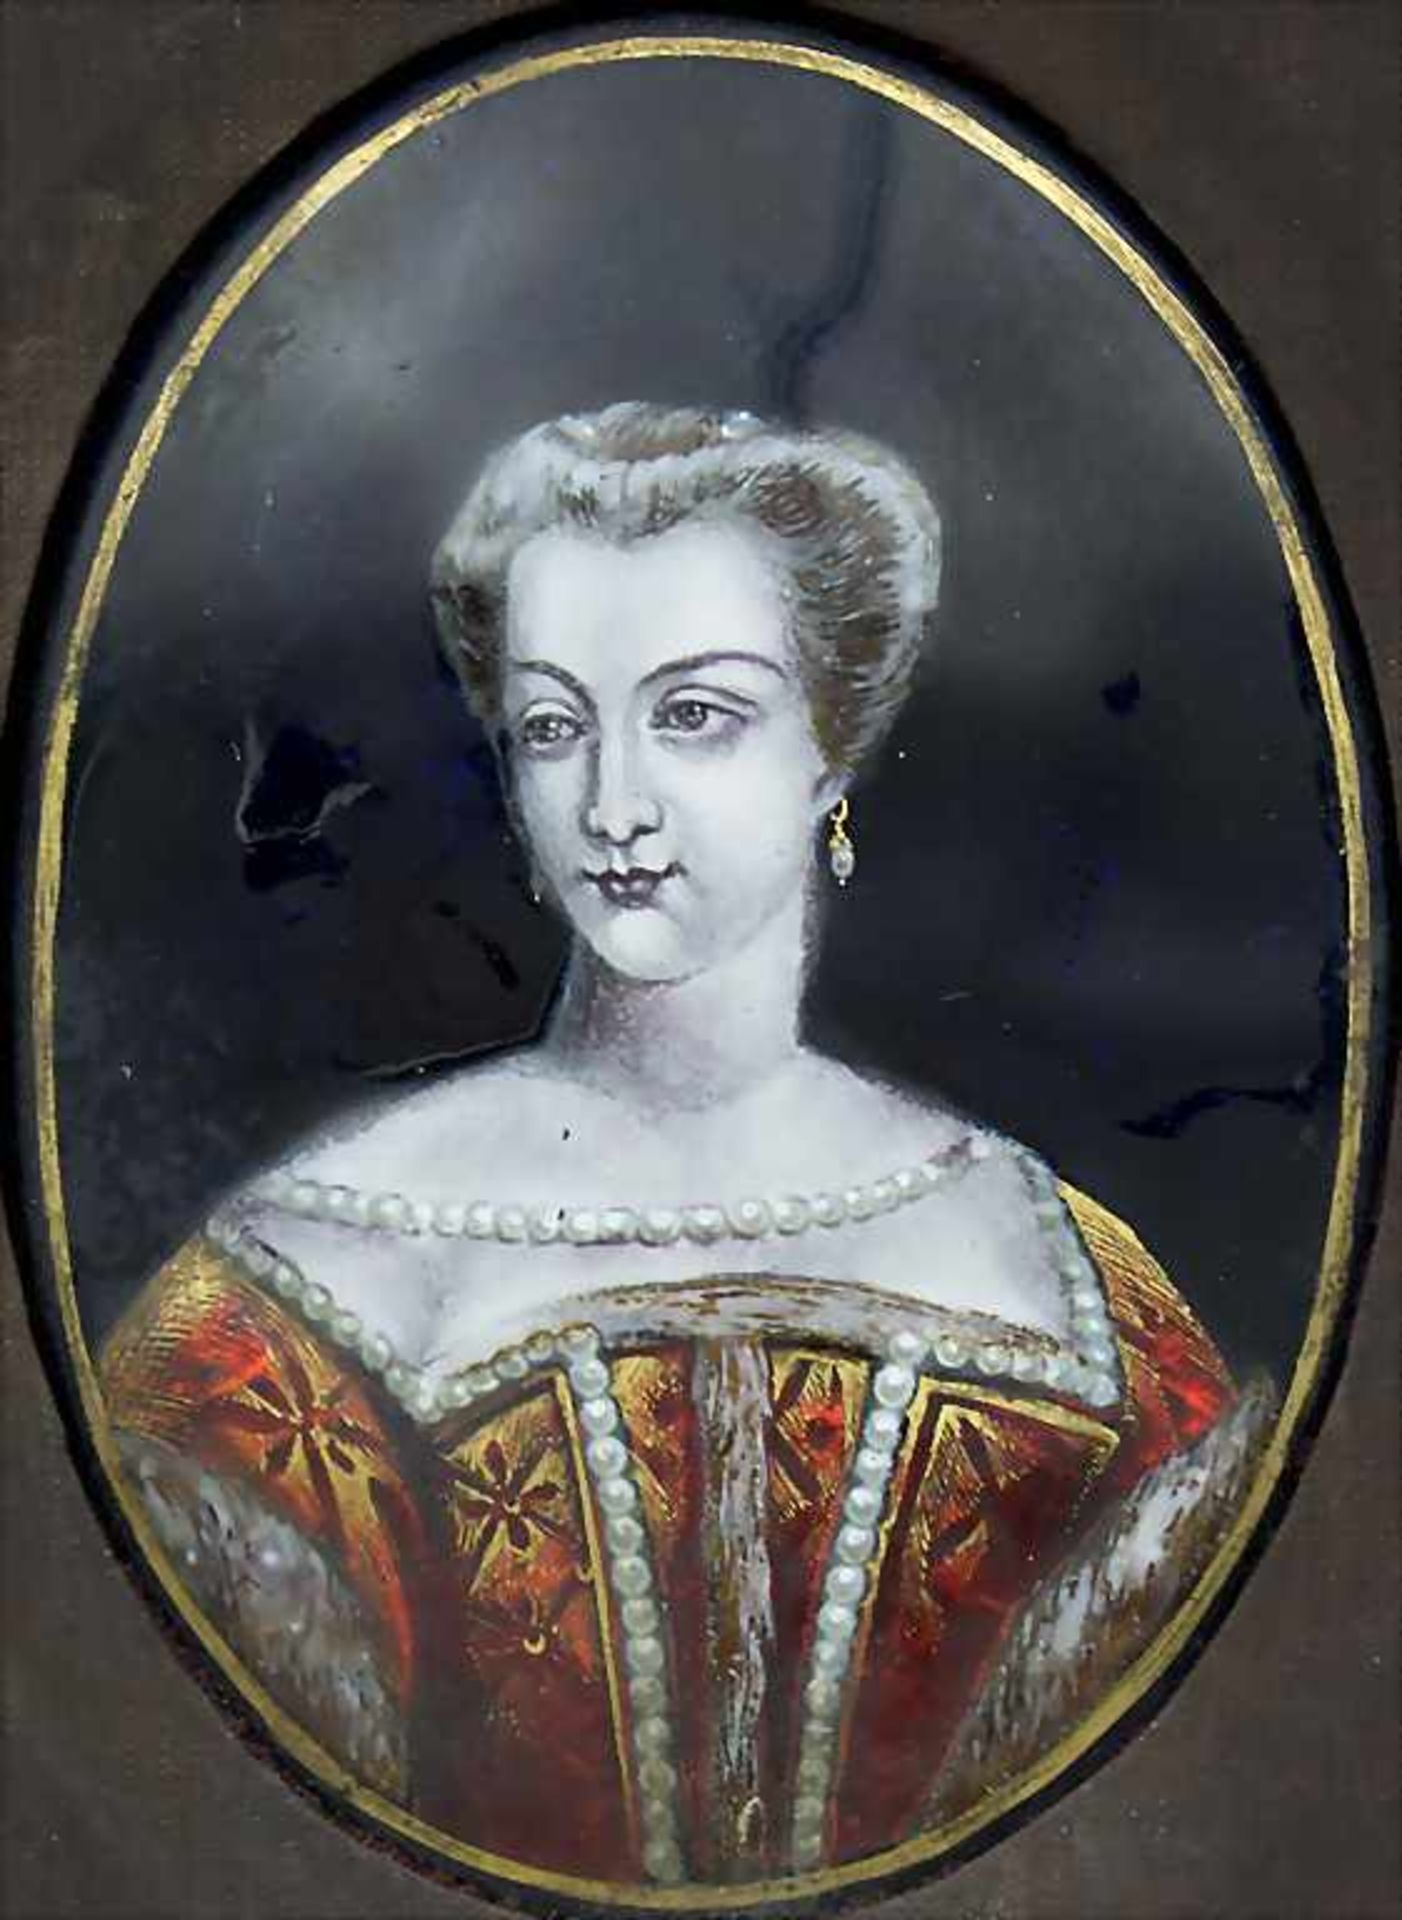 Miniatur Emaille Portrait einer adligen Dame / A miniature email portrait of a noble lady,